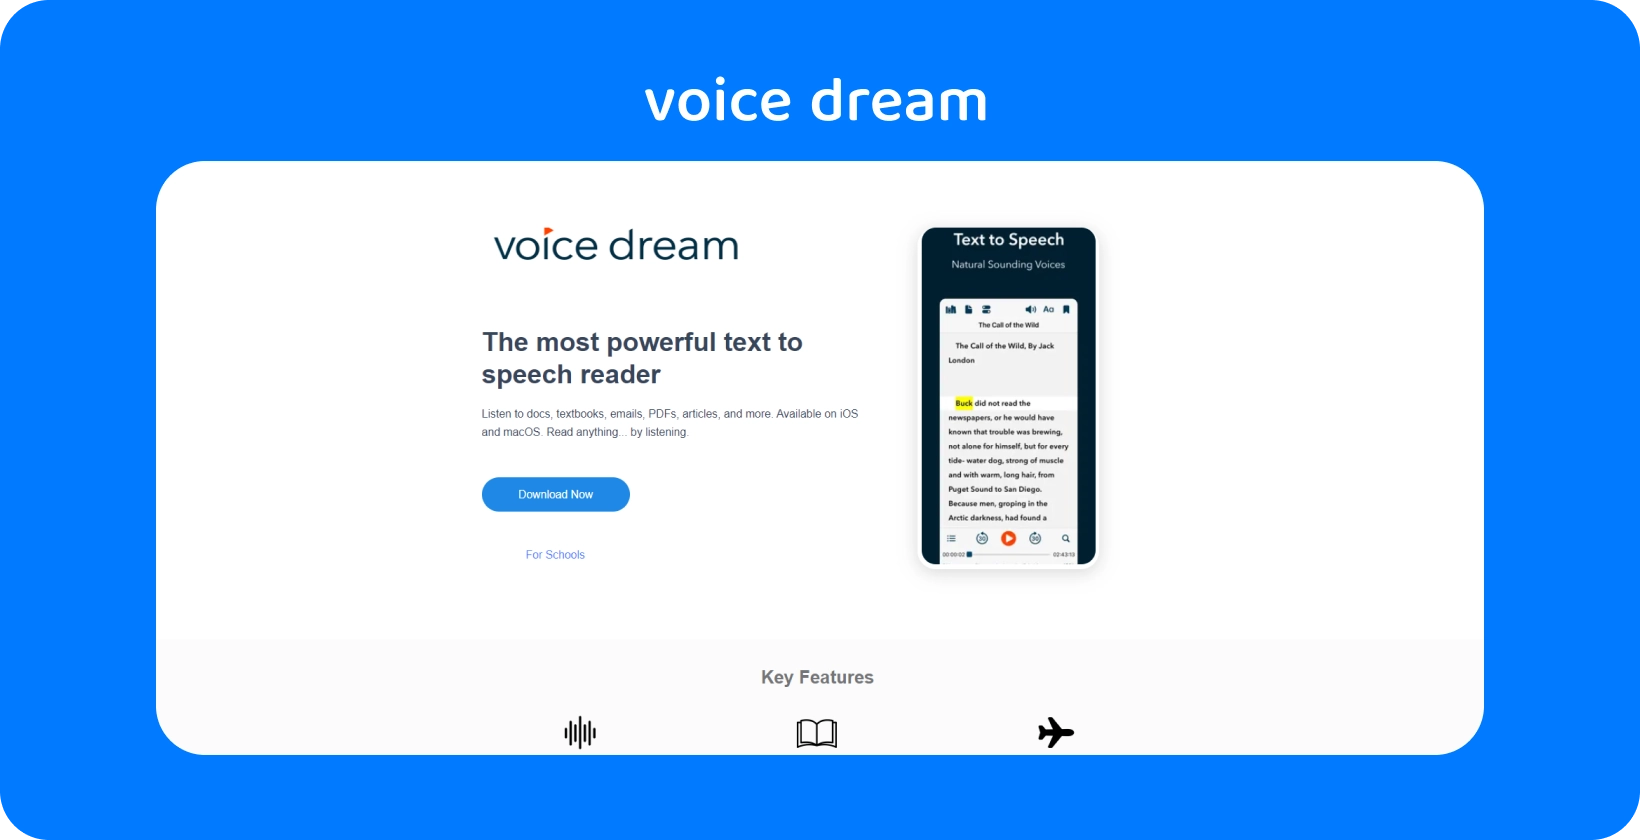 La interfaz de la aplicación Voice Dream muestra un potente lector de texto a voz para varios documentos en dispositivos móviles.